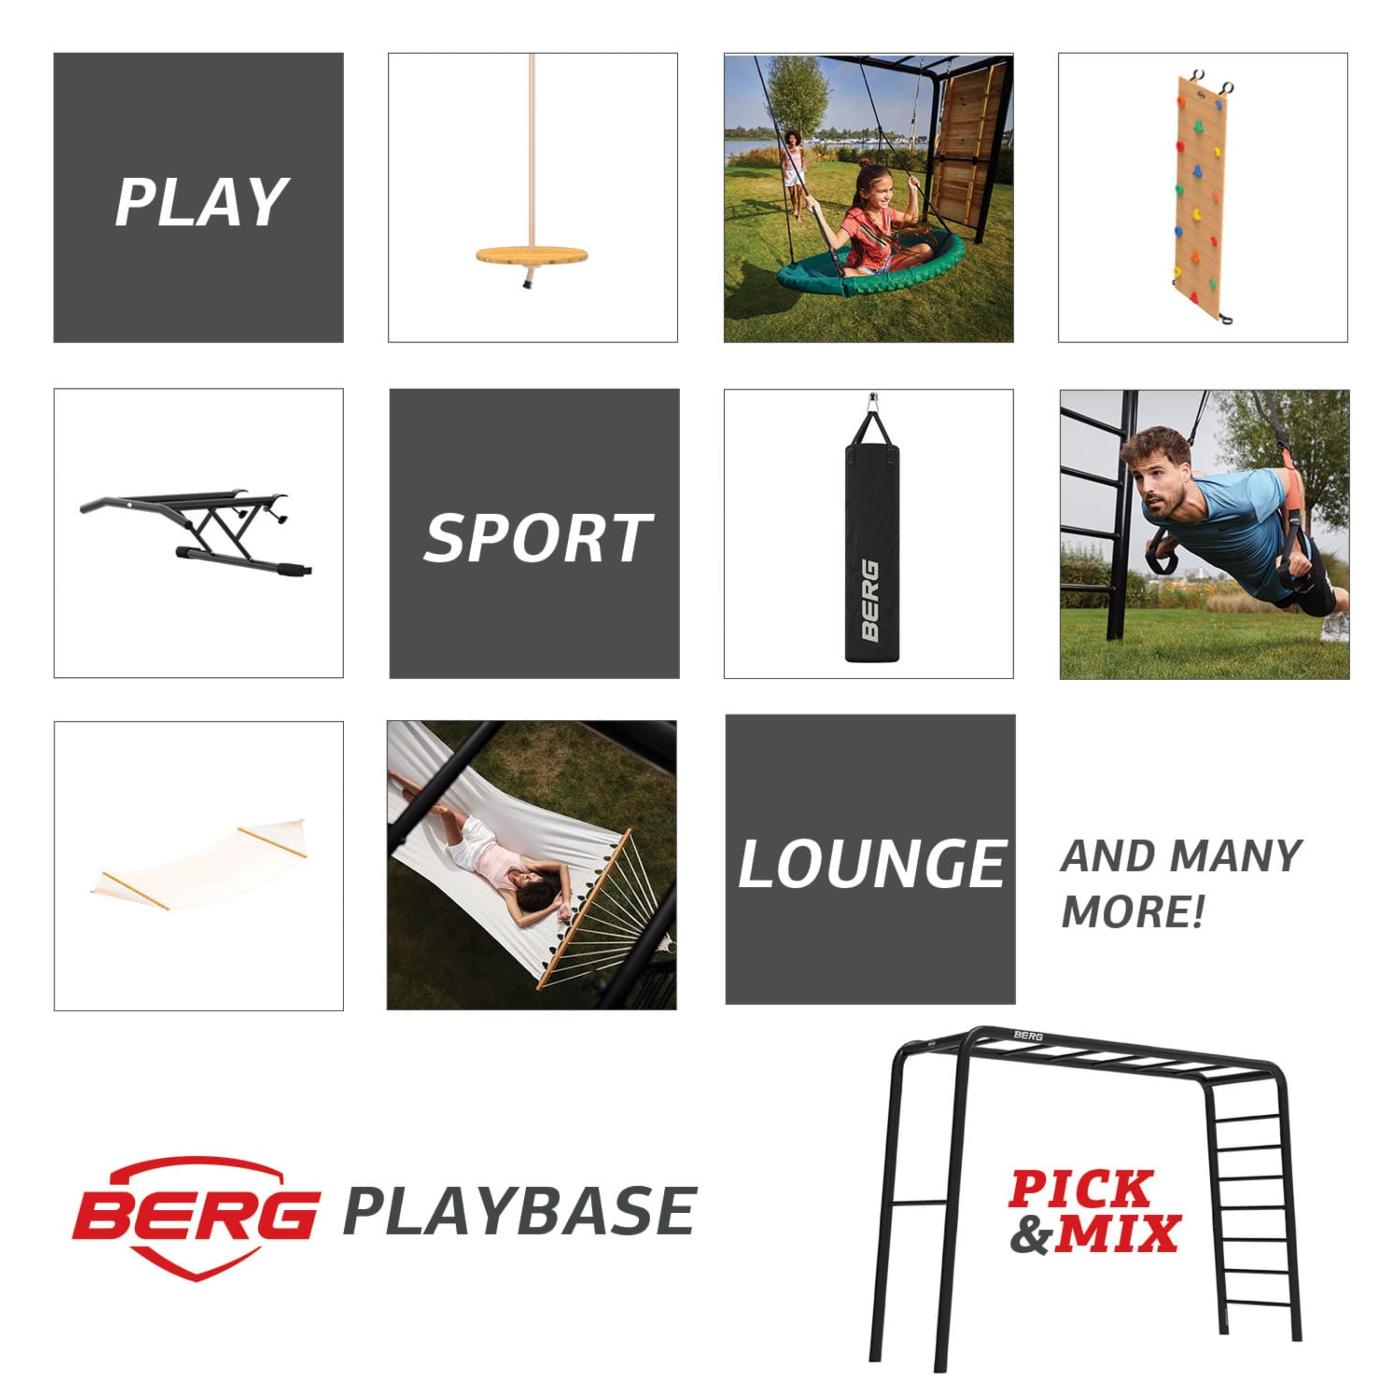 Parque metálico BERG Playbase jugar , hacer deporte, descansar para toda la familia